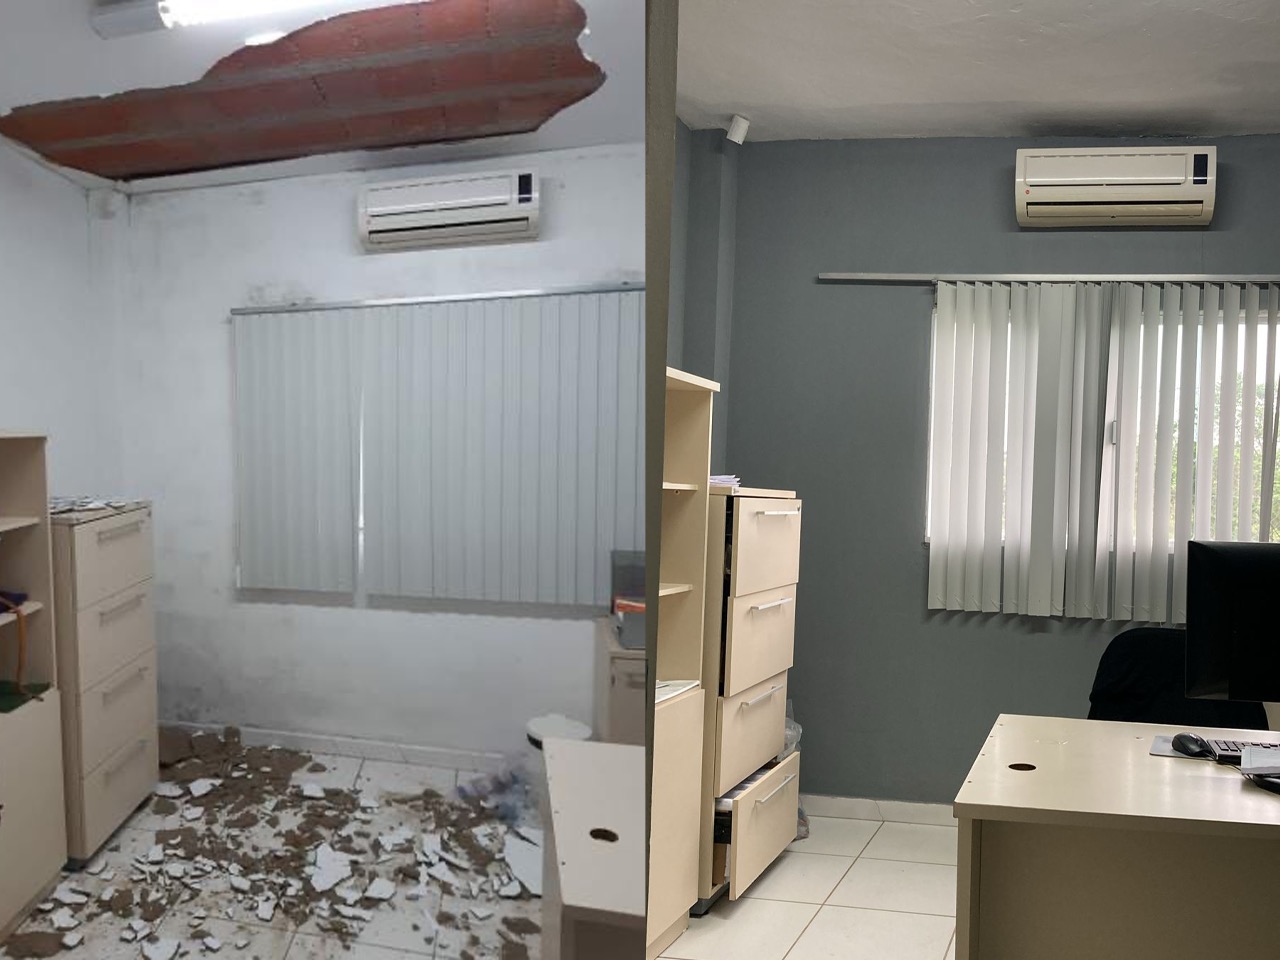 Comunicado: fotos com danos no teto da UBS Planalto são antigas